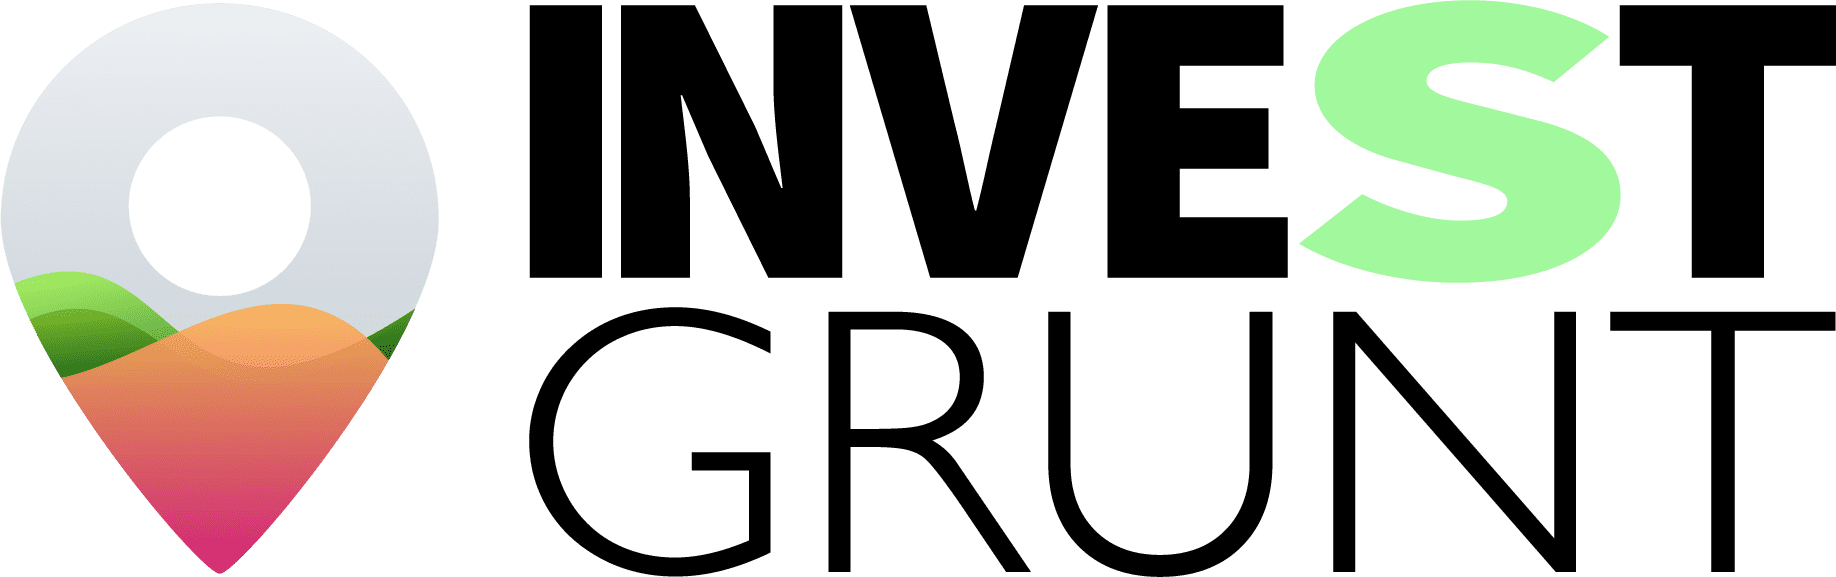 investgrunt.pl - przetargi na inwestycje